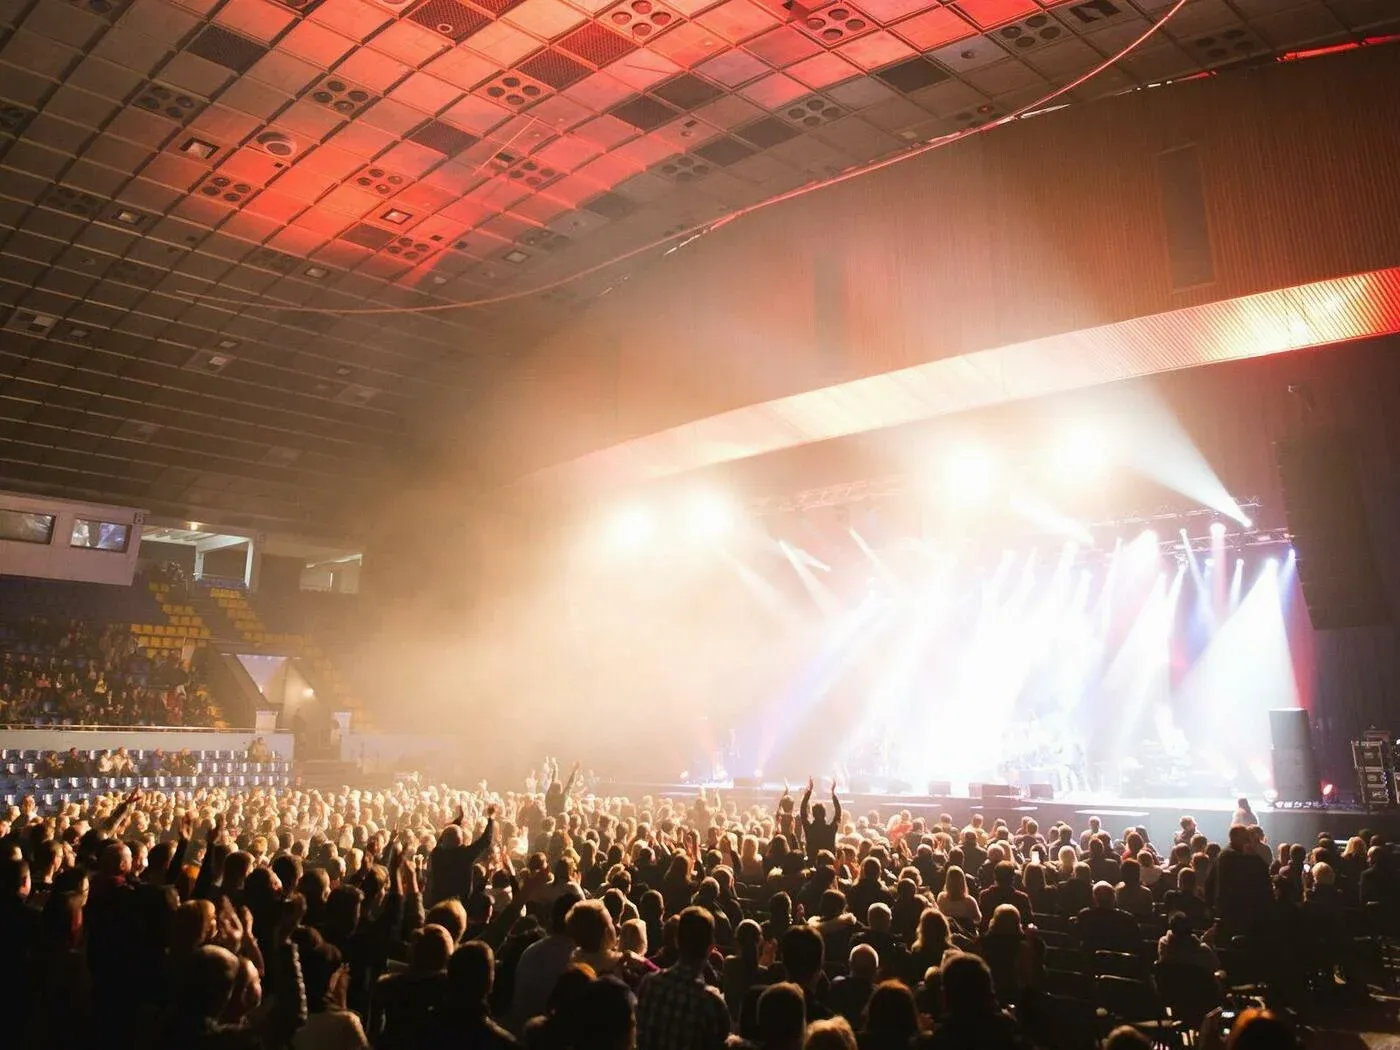 Concert in Arena Mexico City near Grand Fiesta Americana